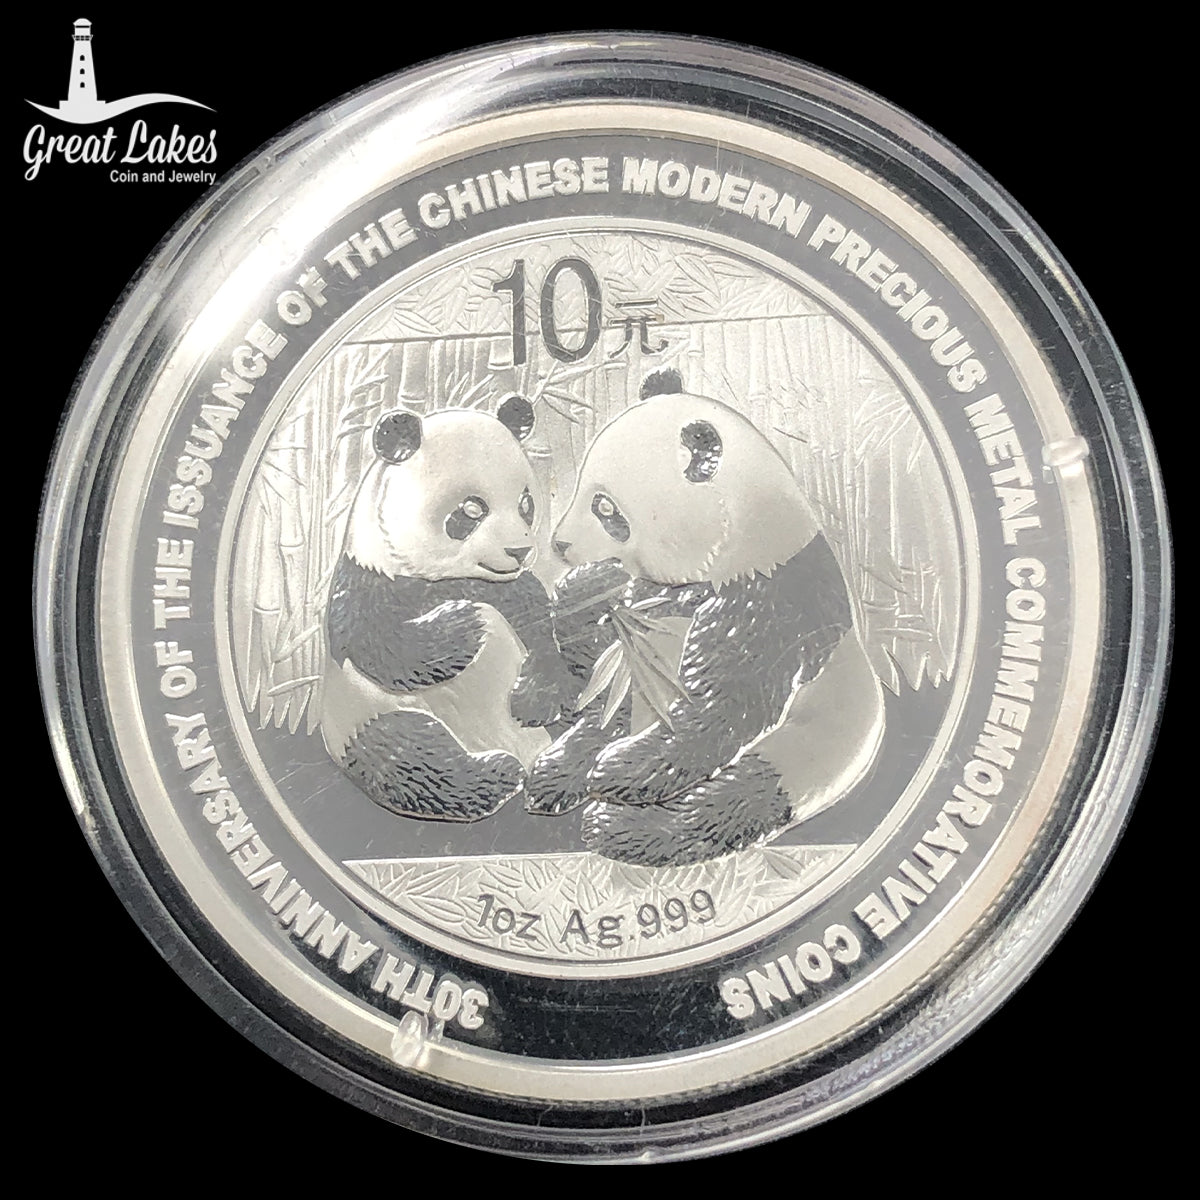 2009 Chinese 1 oz Silver Panda